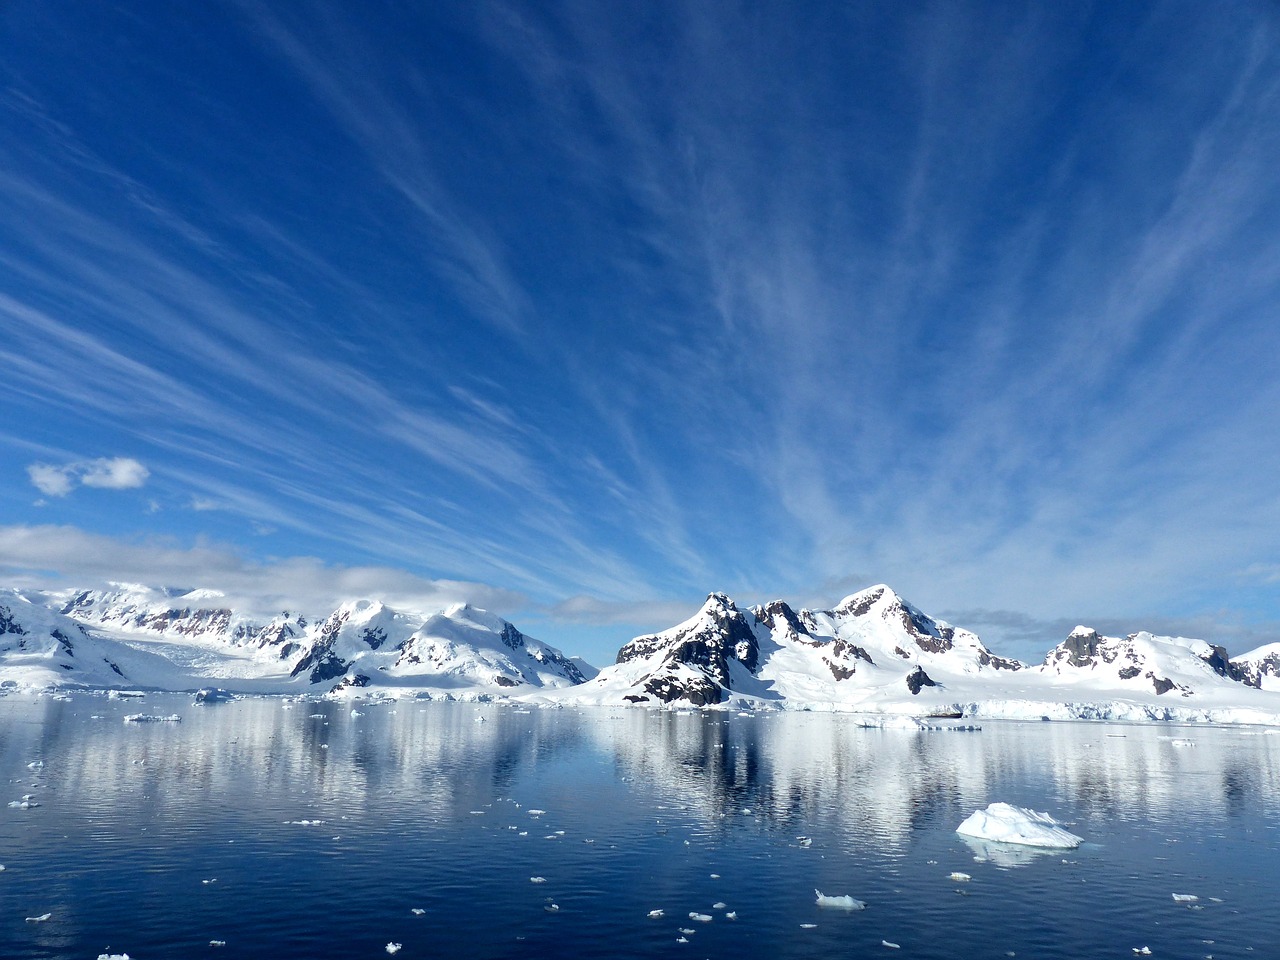  Non, la NASA n’a pas trouvé les preuves de l’existence d’un univers parallèle en Antarctique